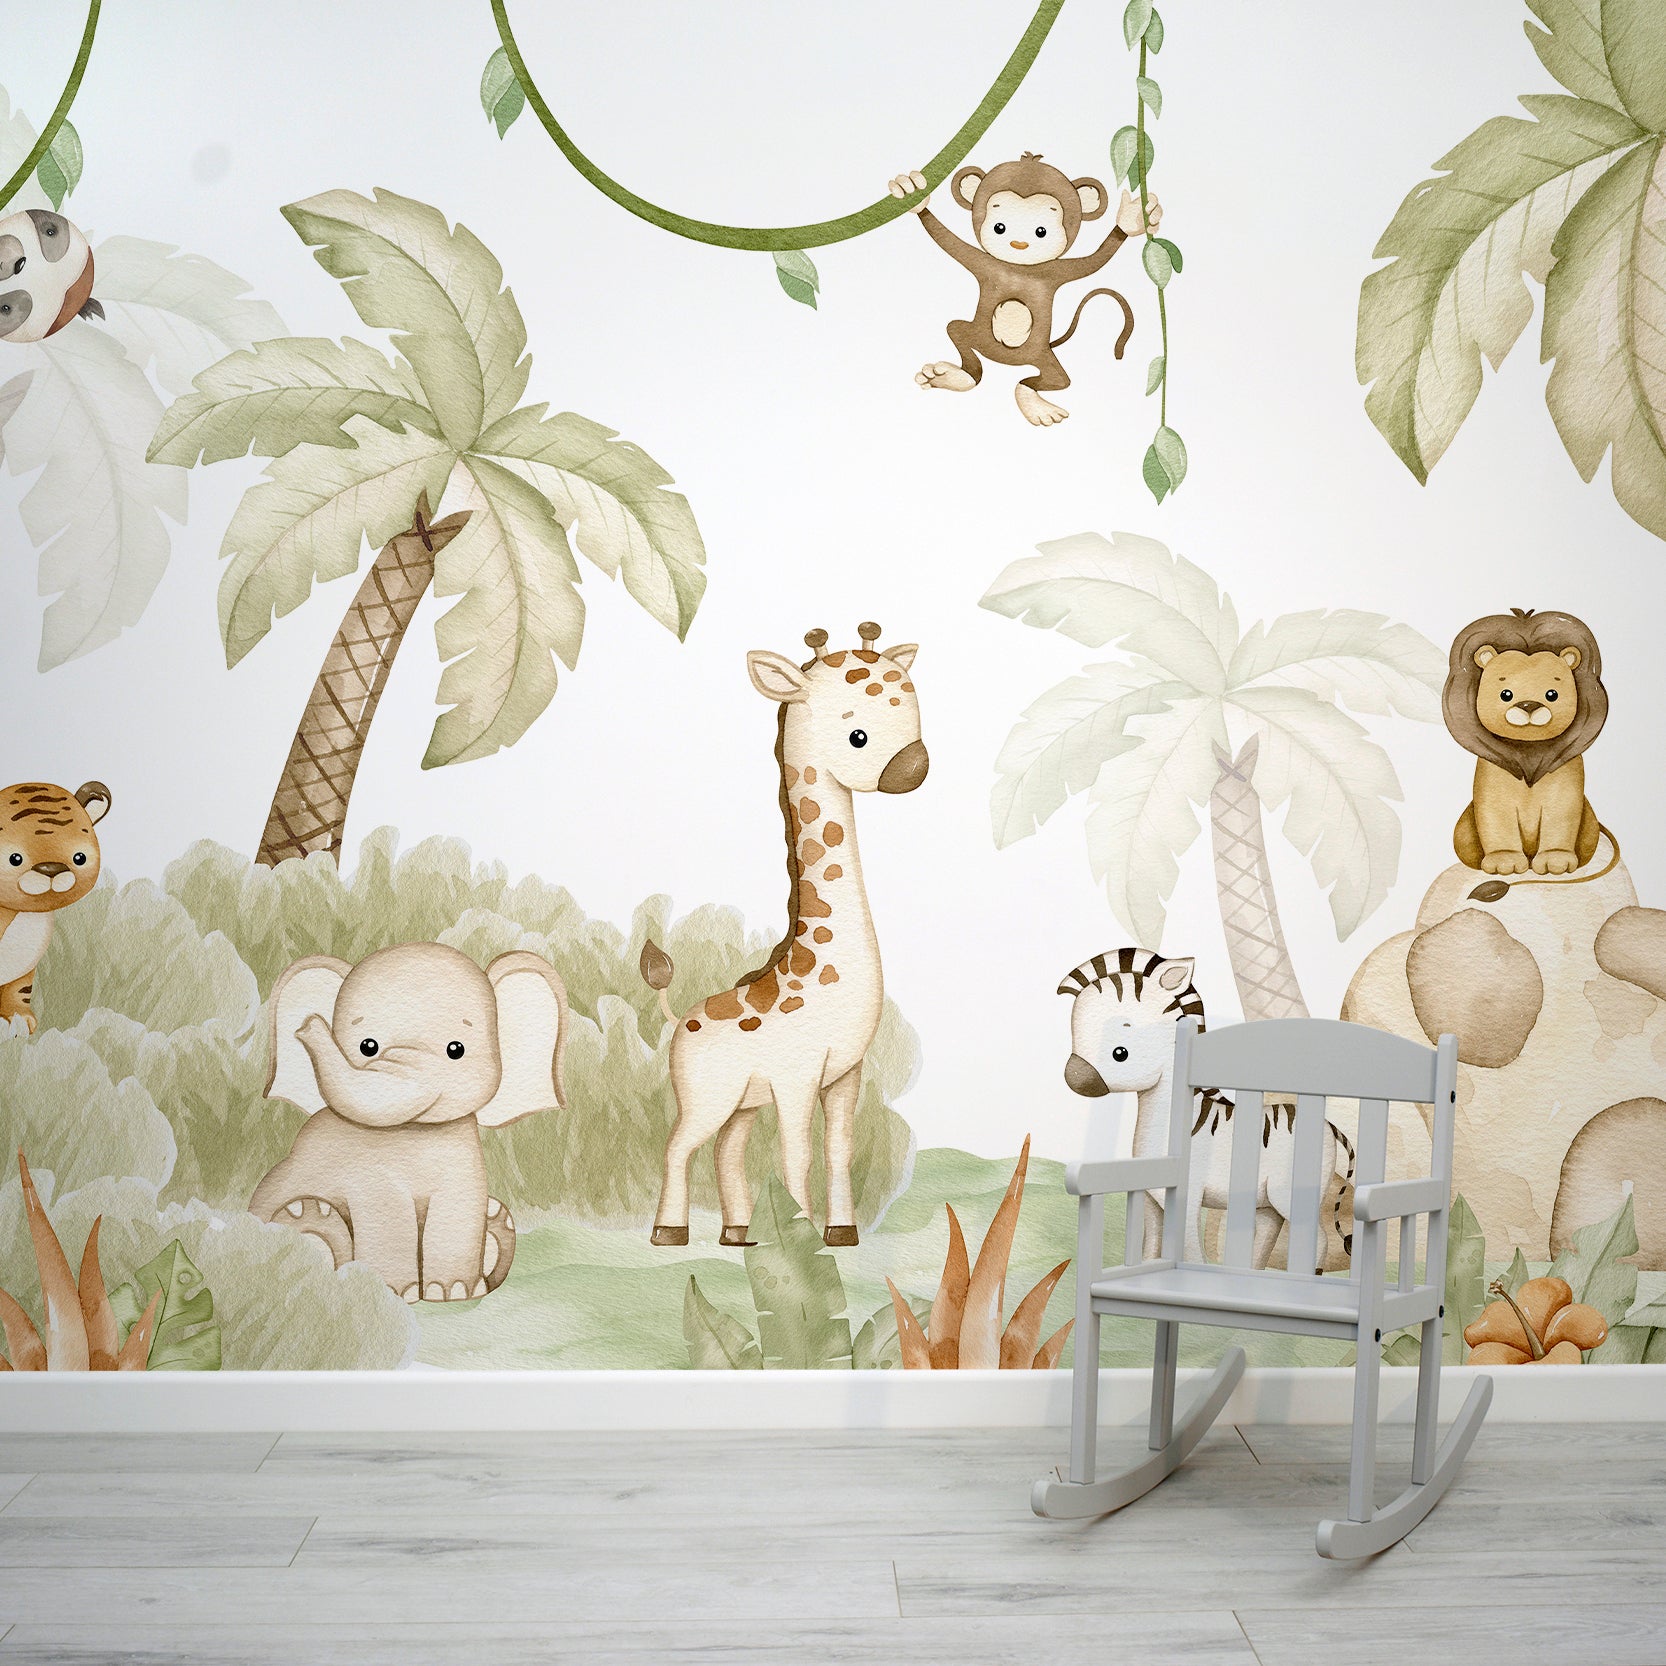 Cute Watercolour Jungle Animal Wallpaper Mural | WallpaperMural